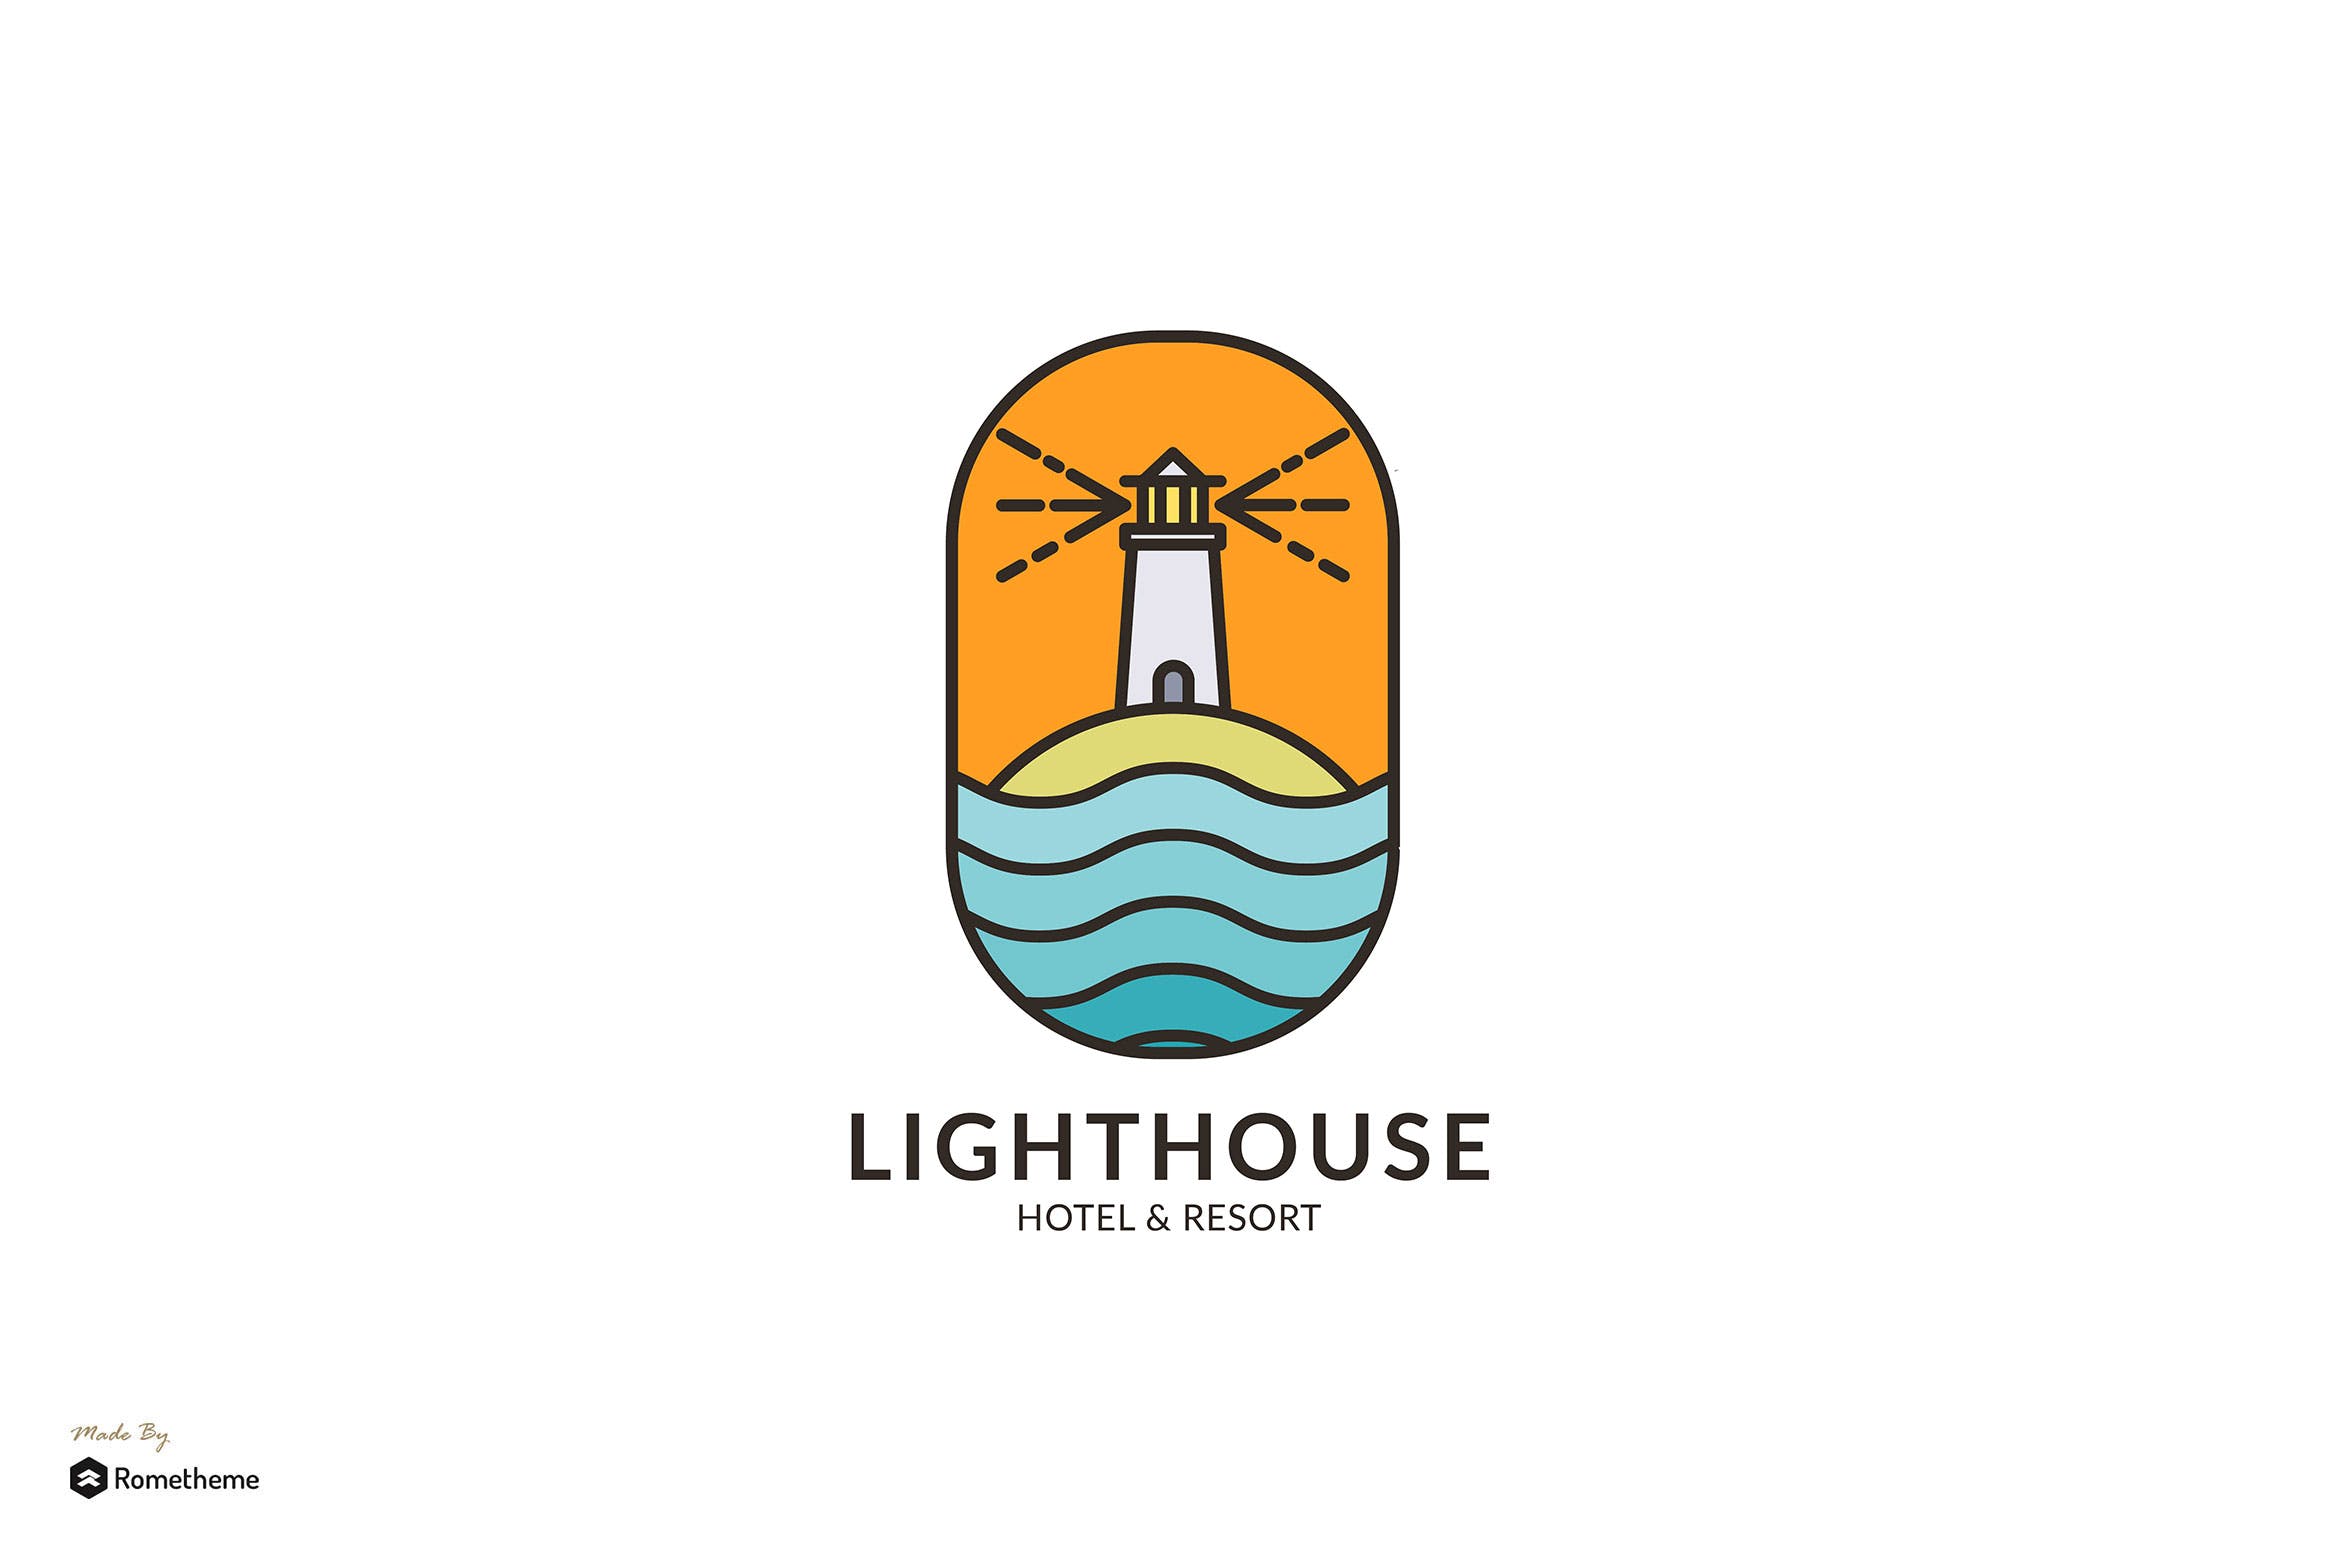 灯塔酒店/度假村商标&品牌Logo设计第一素材精选模板 Lighthouse Hotel & Resort – Logo Template RB插图